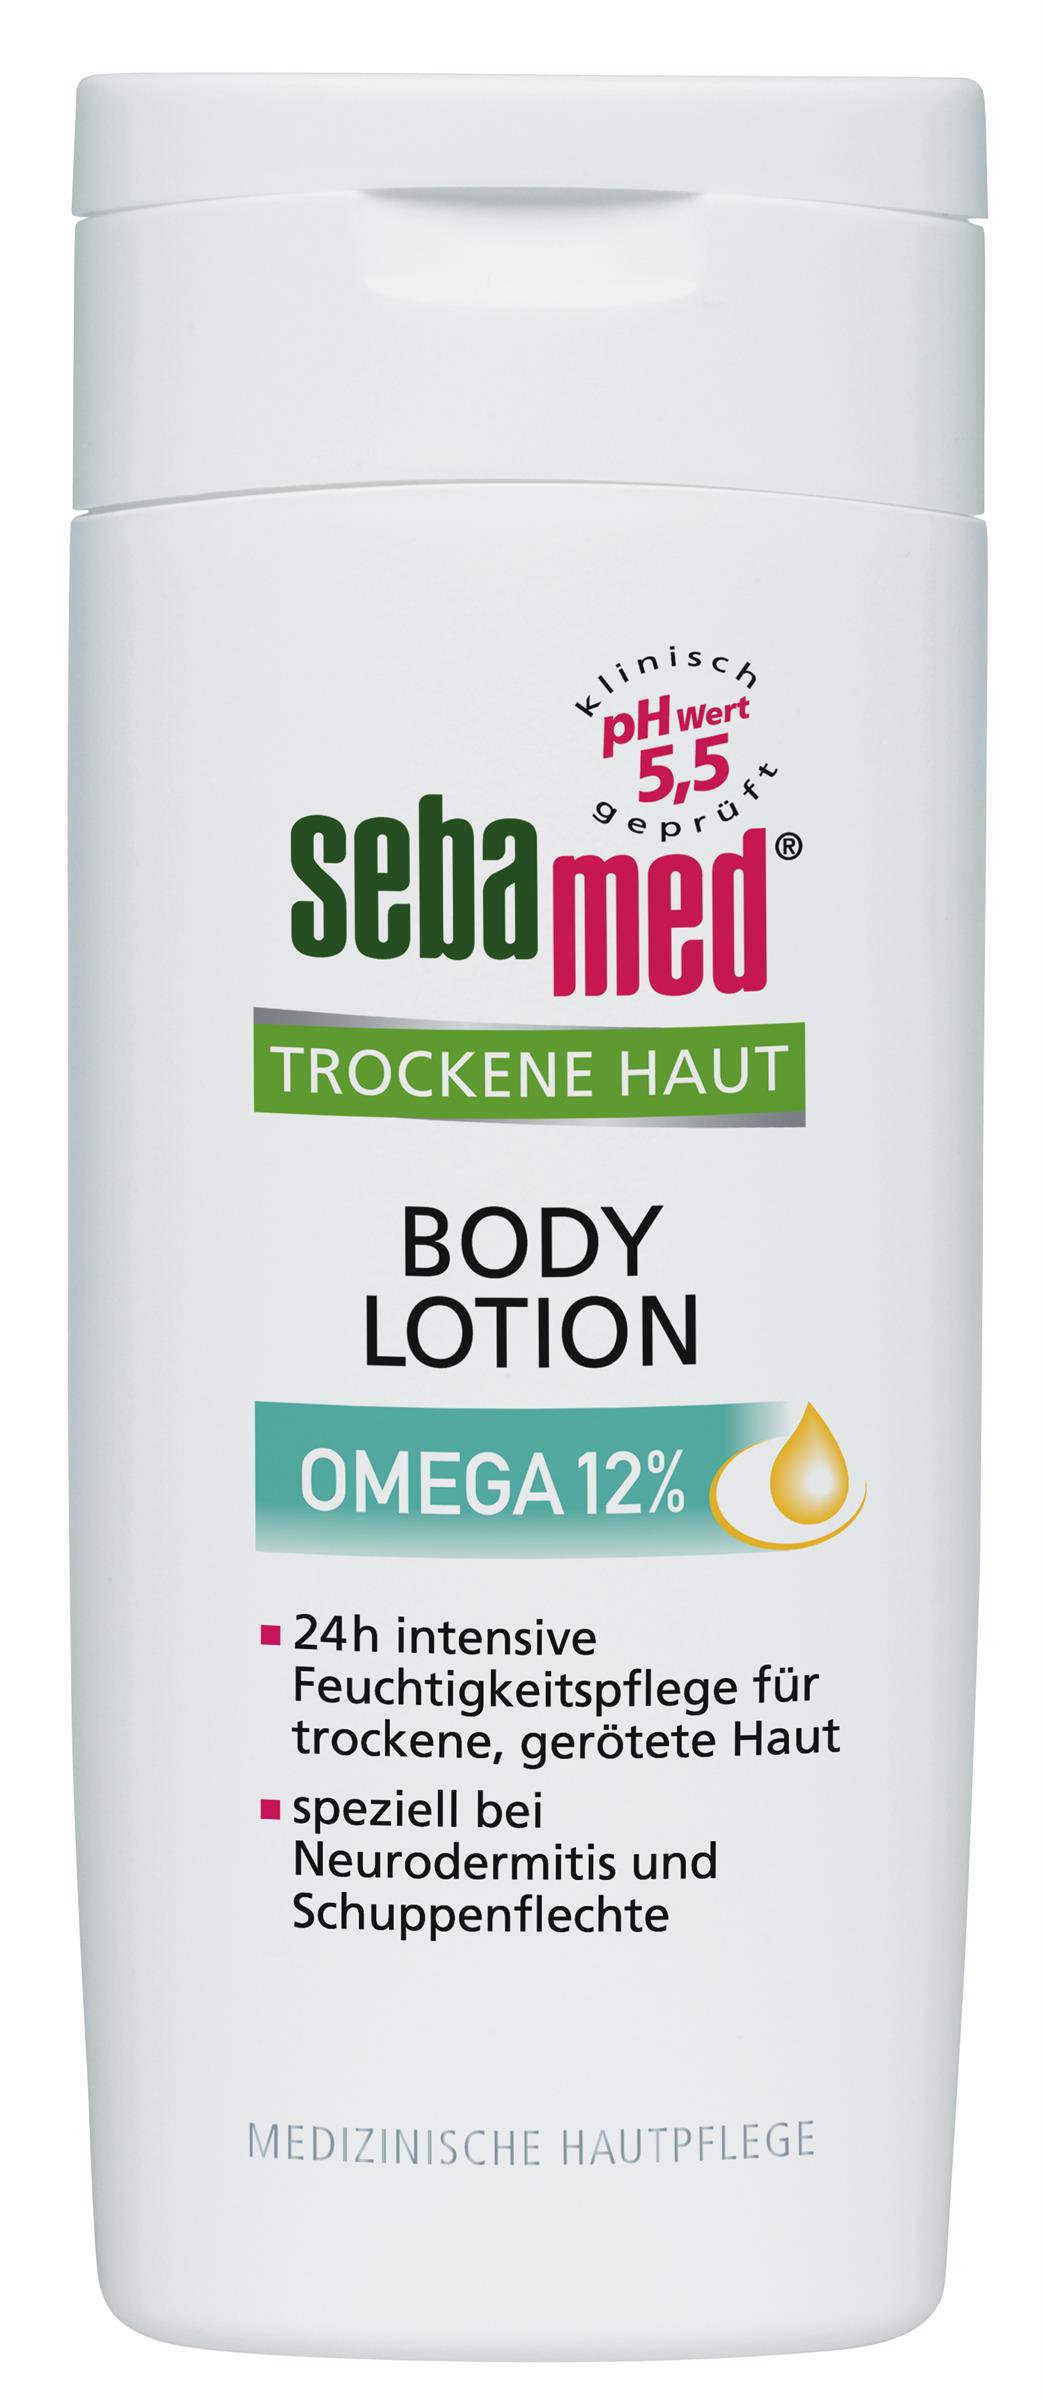 sebamed Trockene Haut Body Lotion Omega 12% (200 ml)